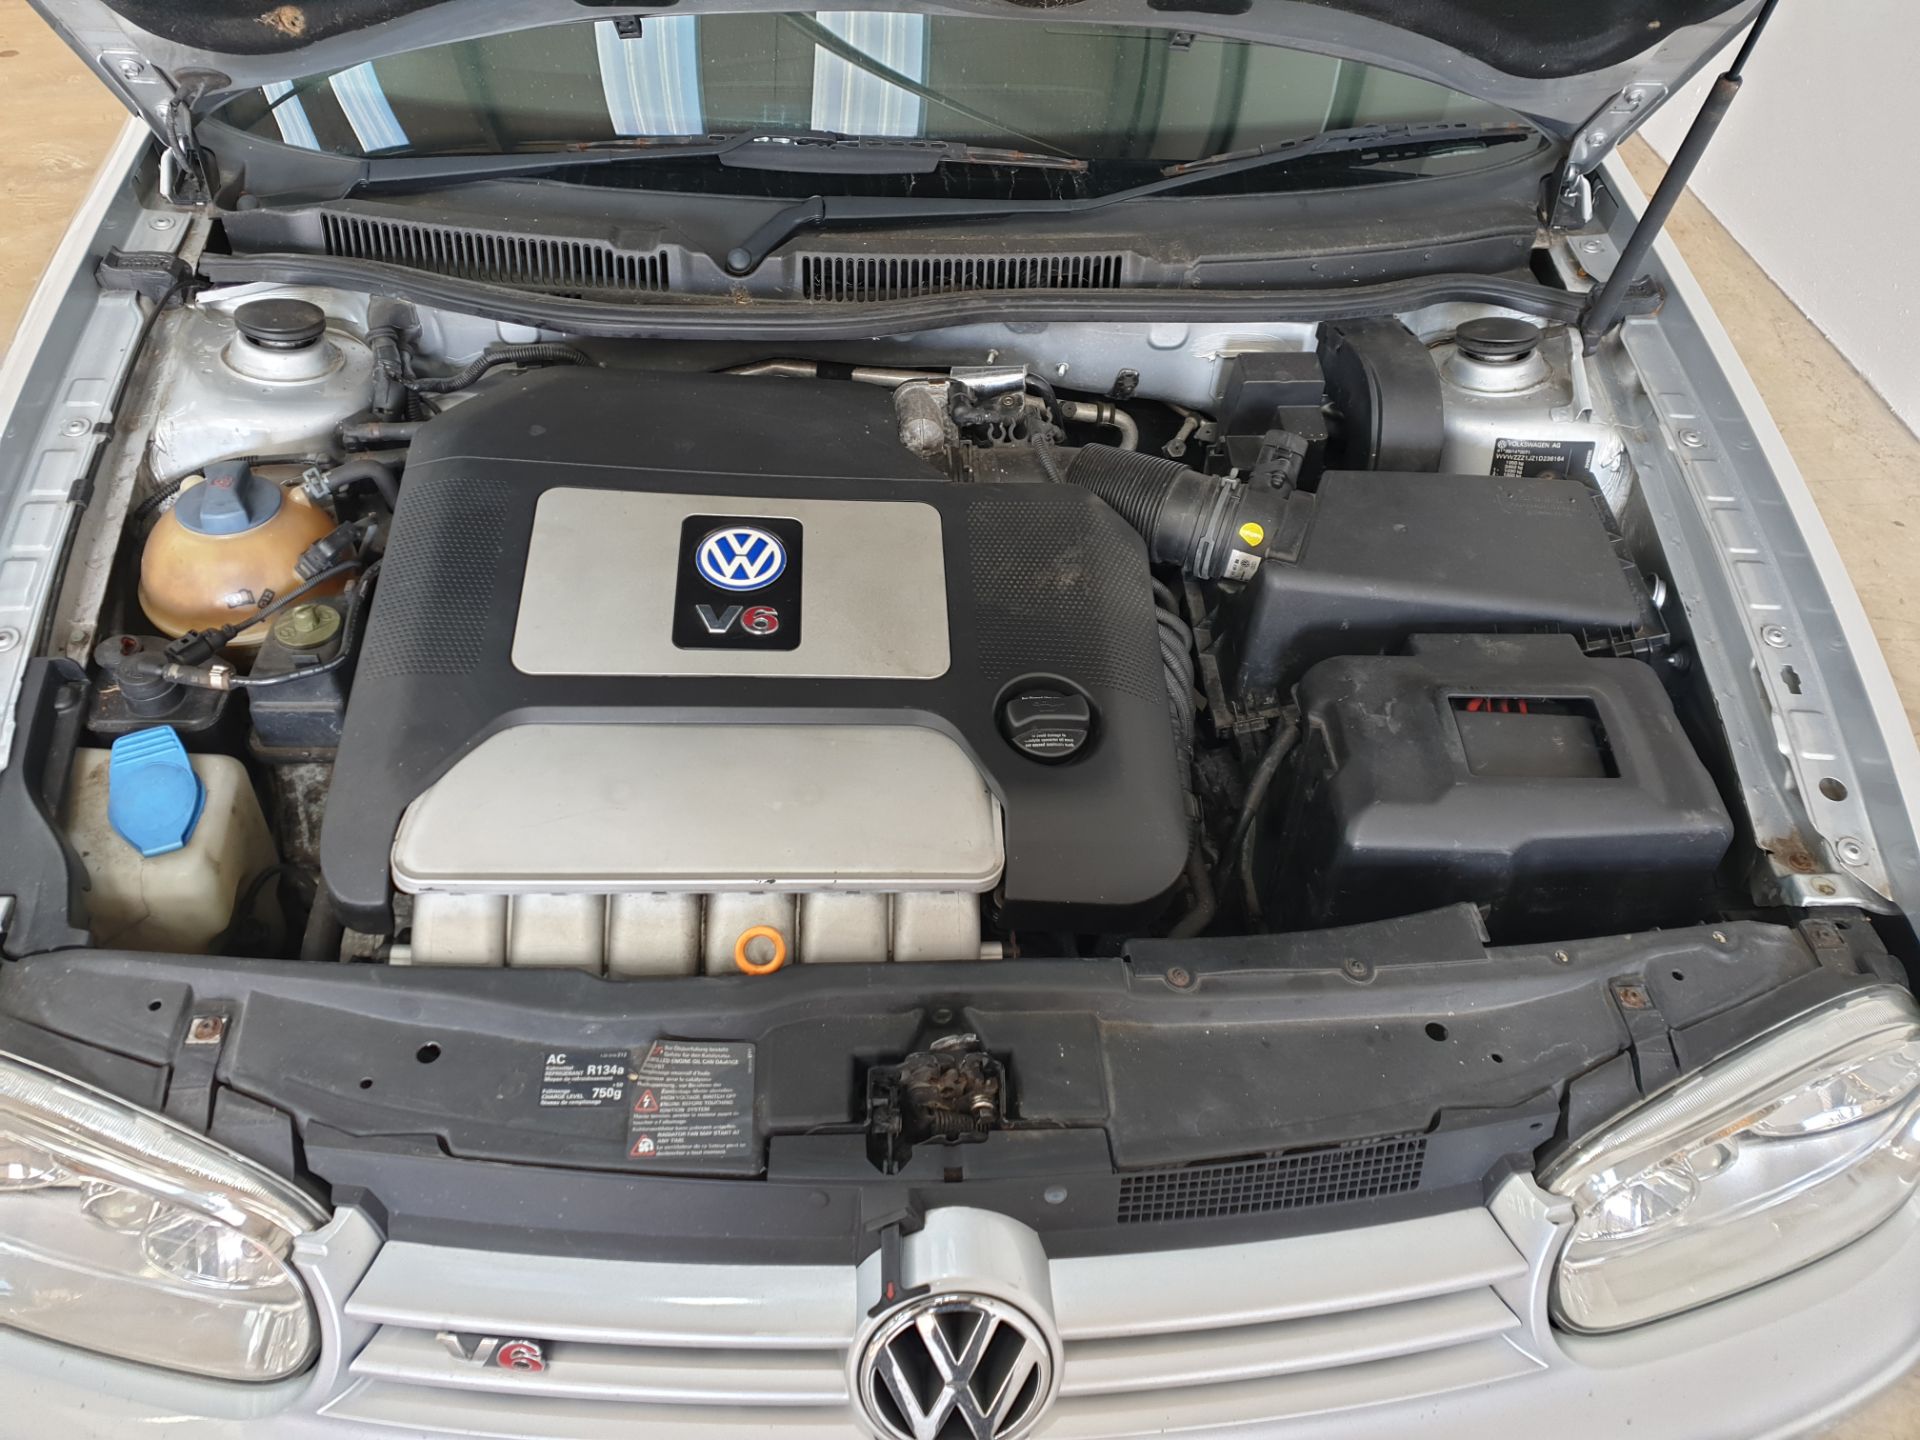 2001 VW Golf V6 4 Motion - Image 14 of 14